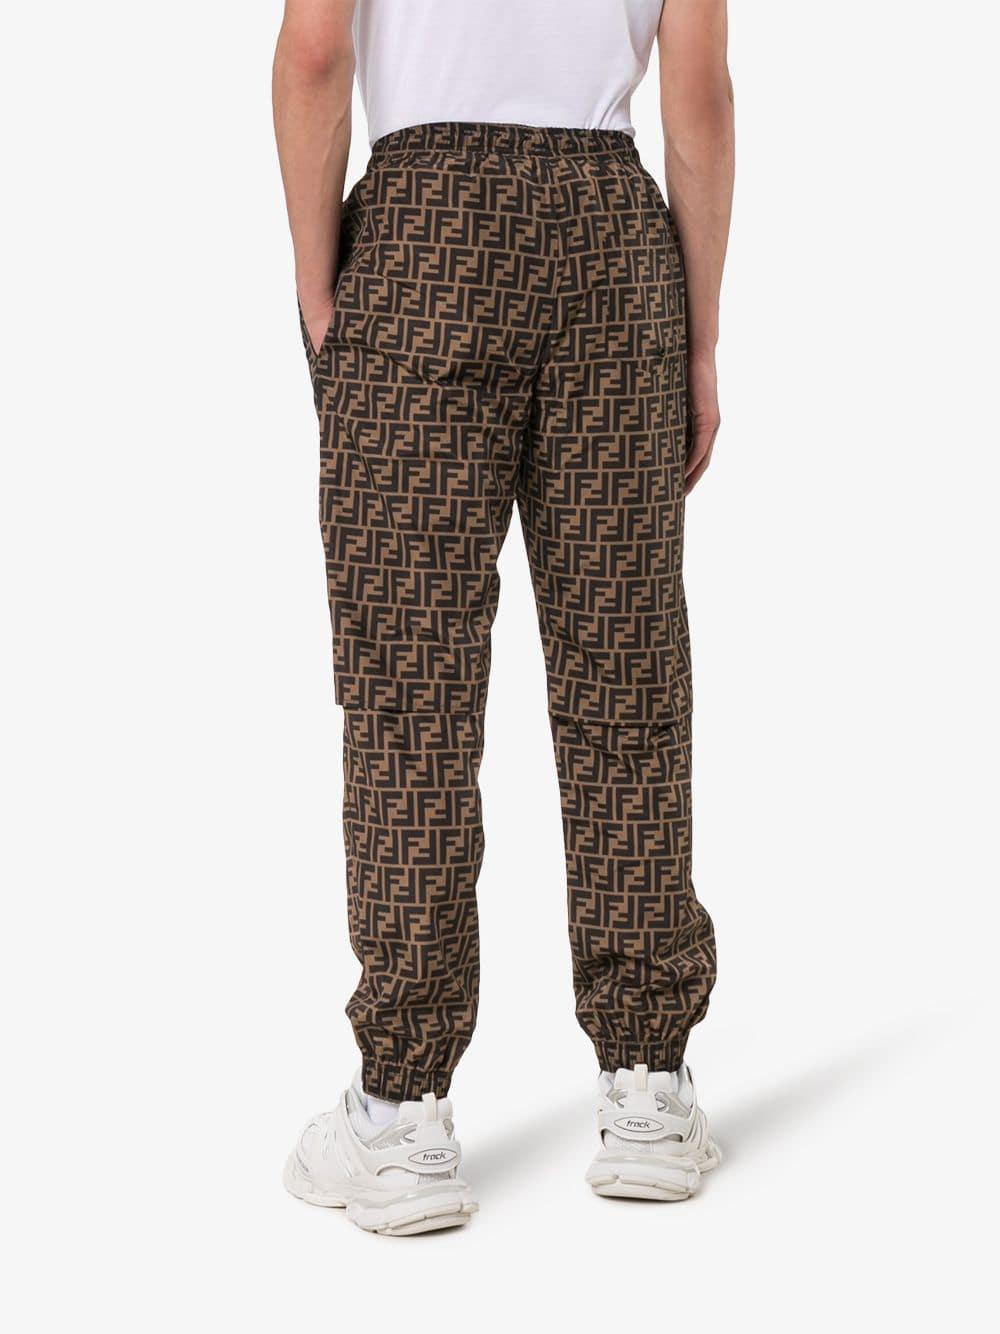 Fendi Ff Logo Print Sweatpants in Brown for Men - Lyst